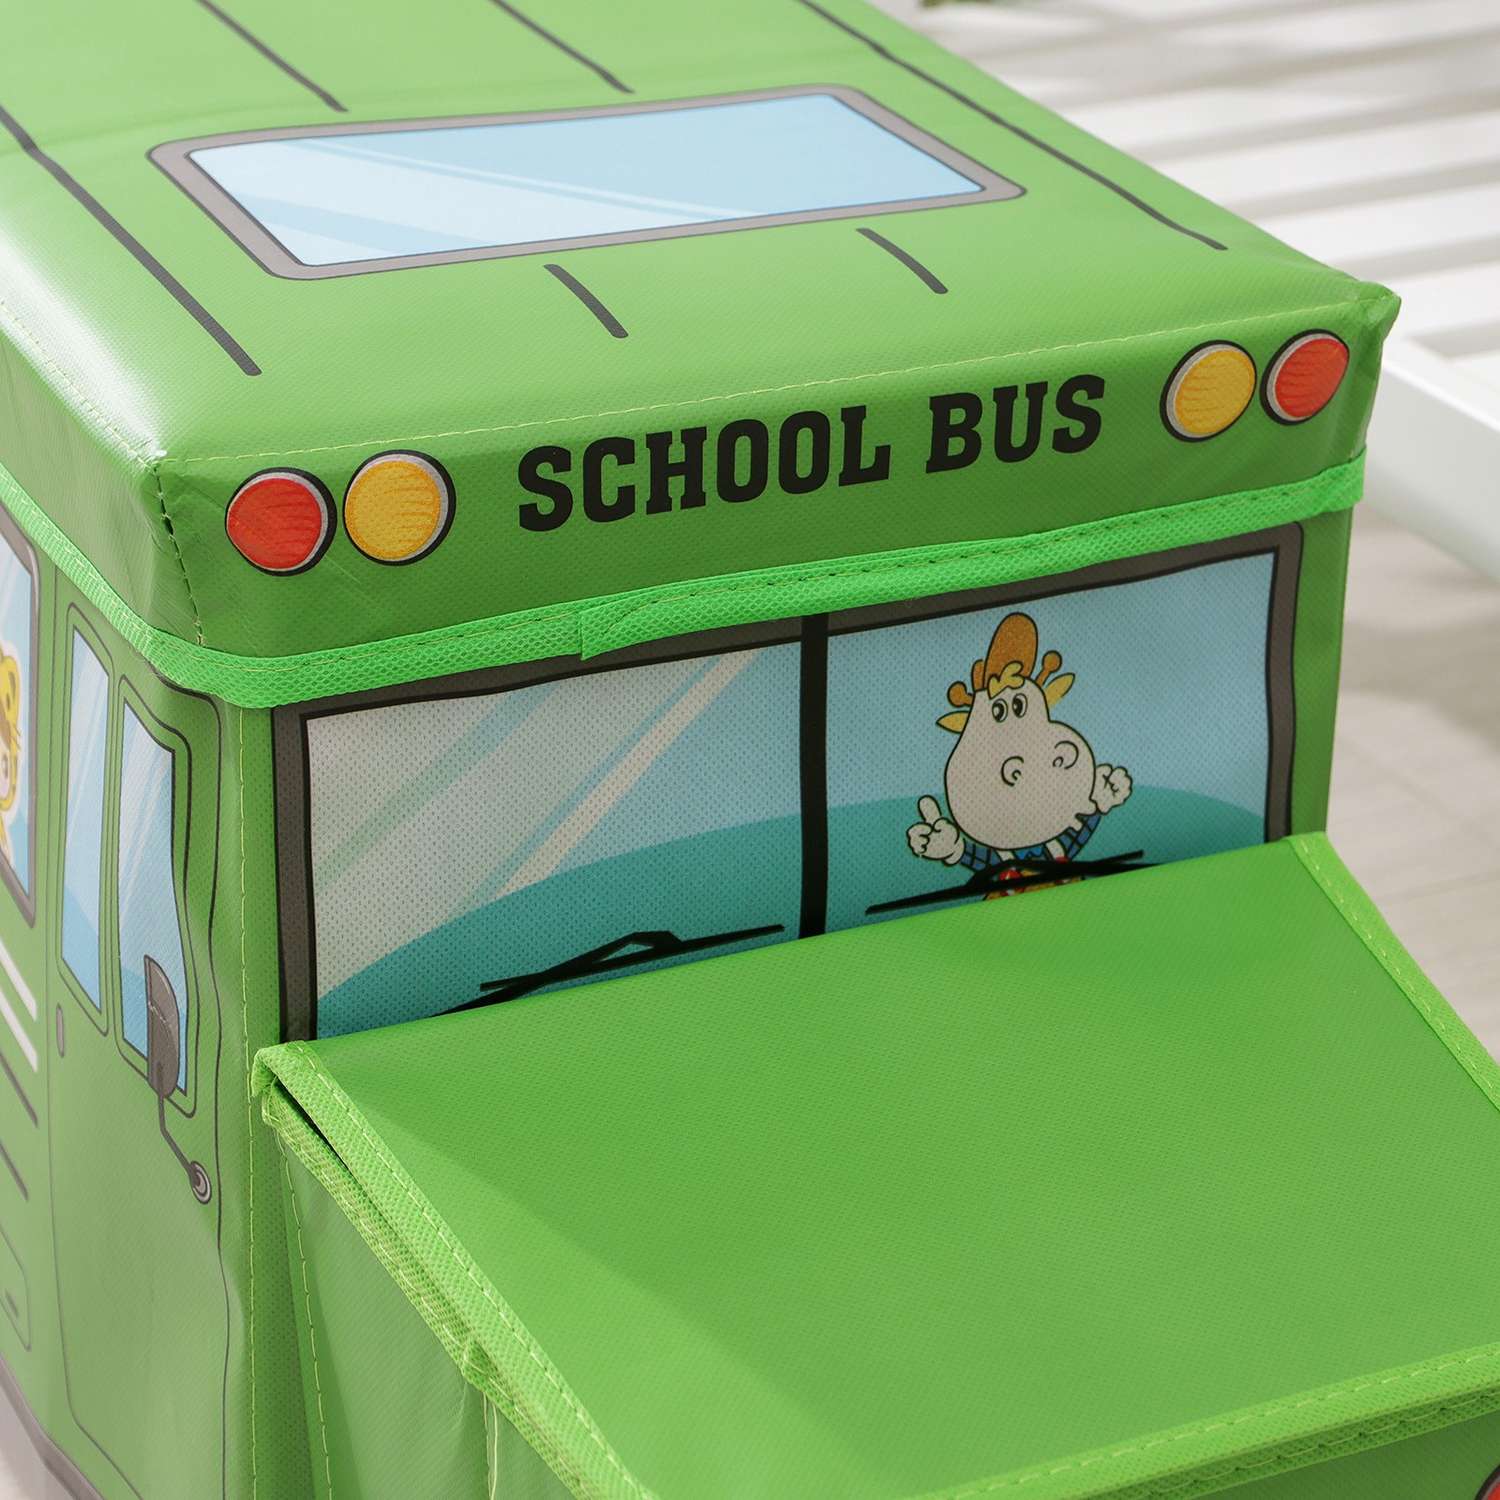 Короб Школа Талантов стеллажный для хранения с крышкой «Школьный автобус» 55×26×32 см 2 отделения цвет зелёный - фото 6